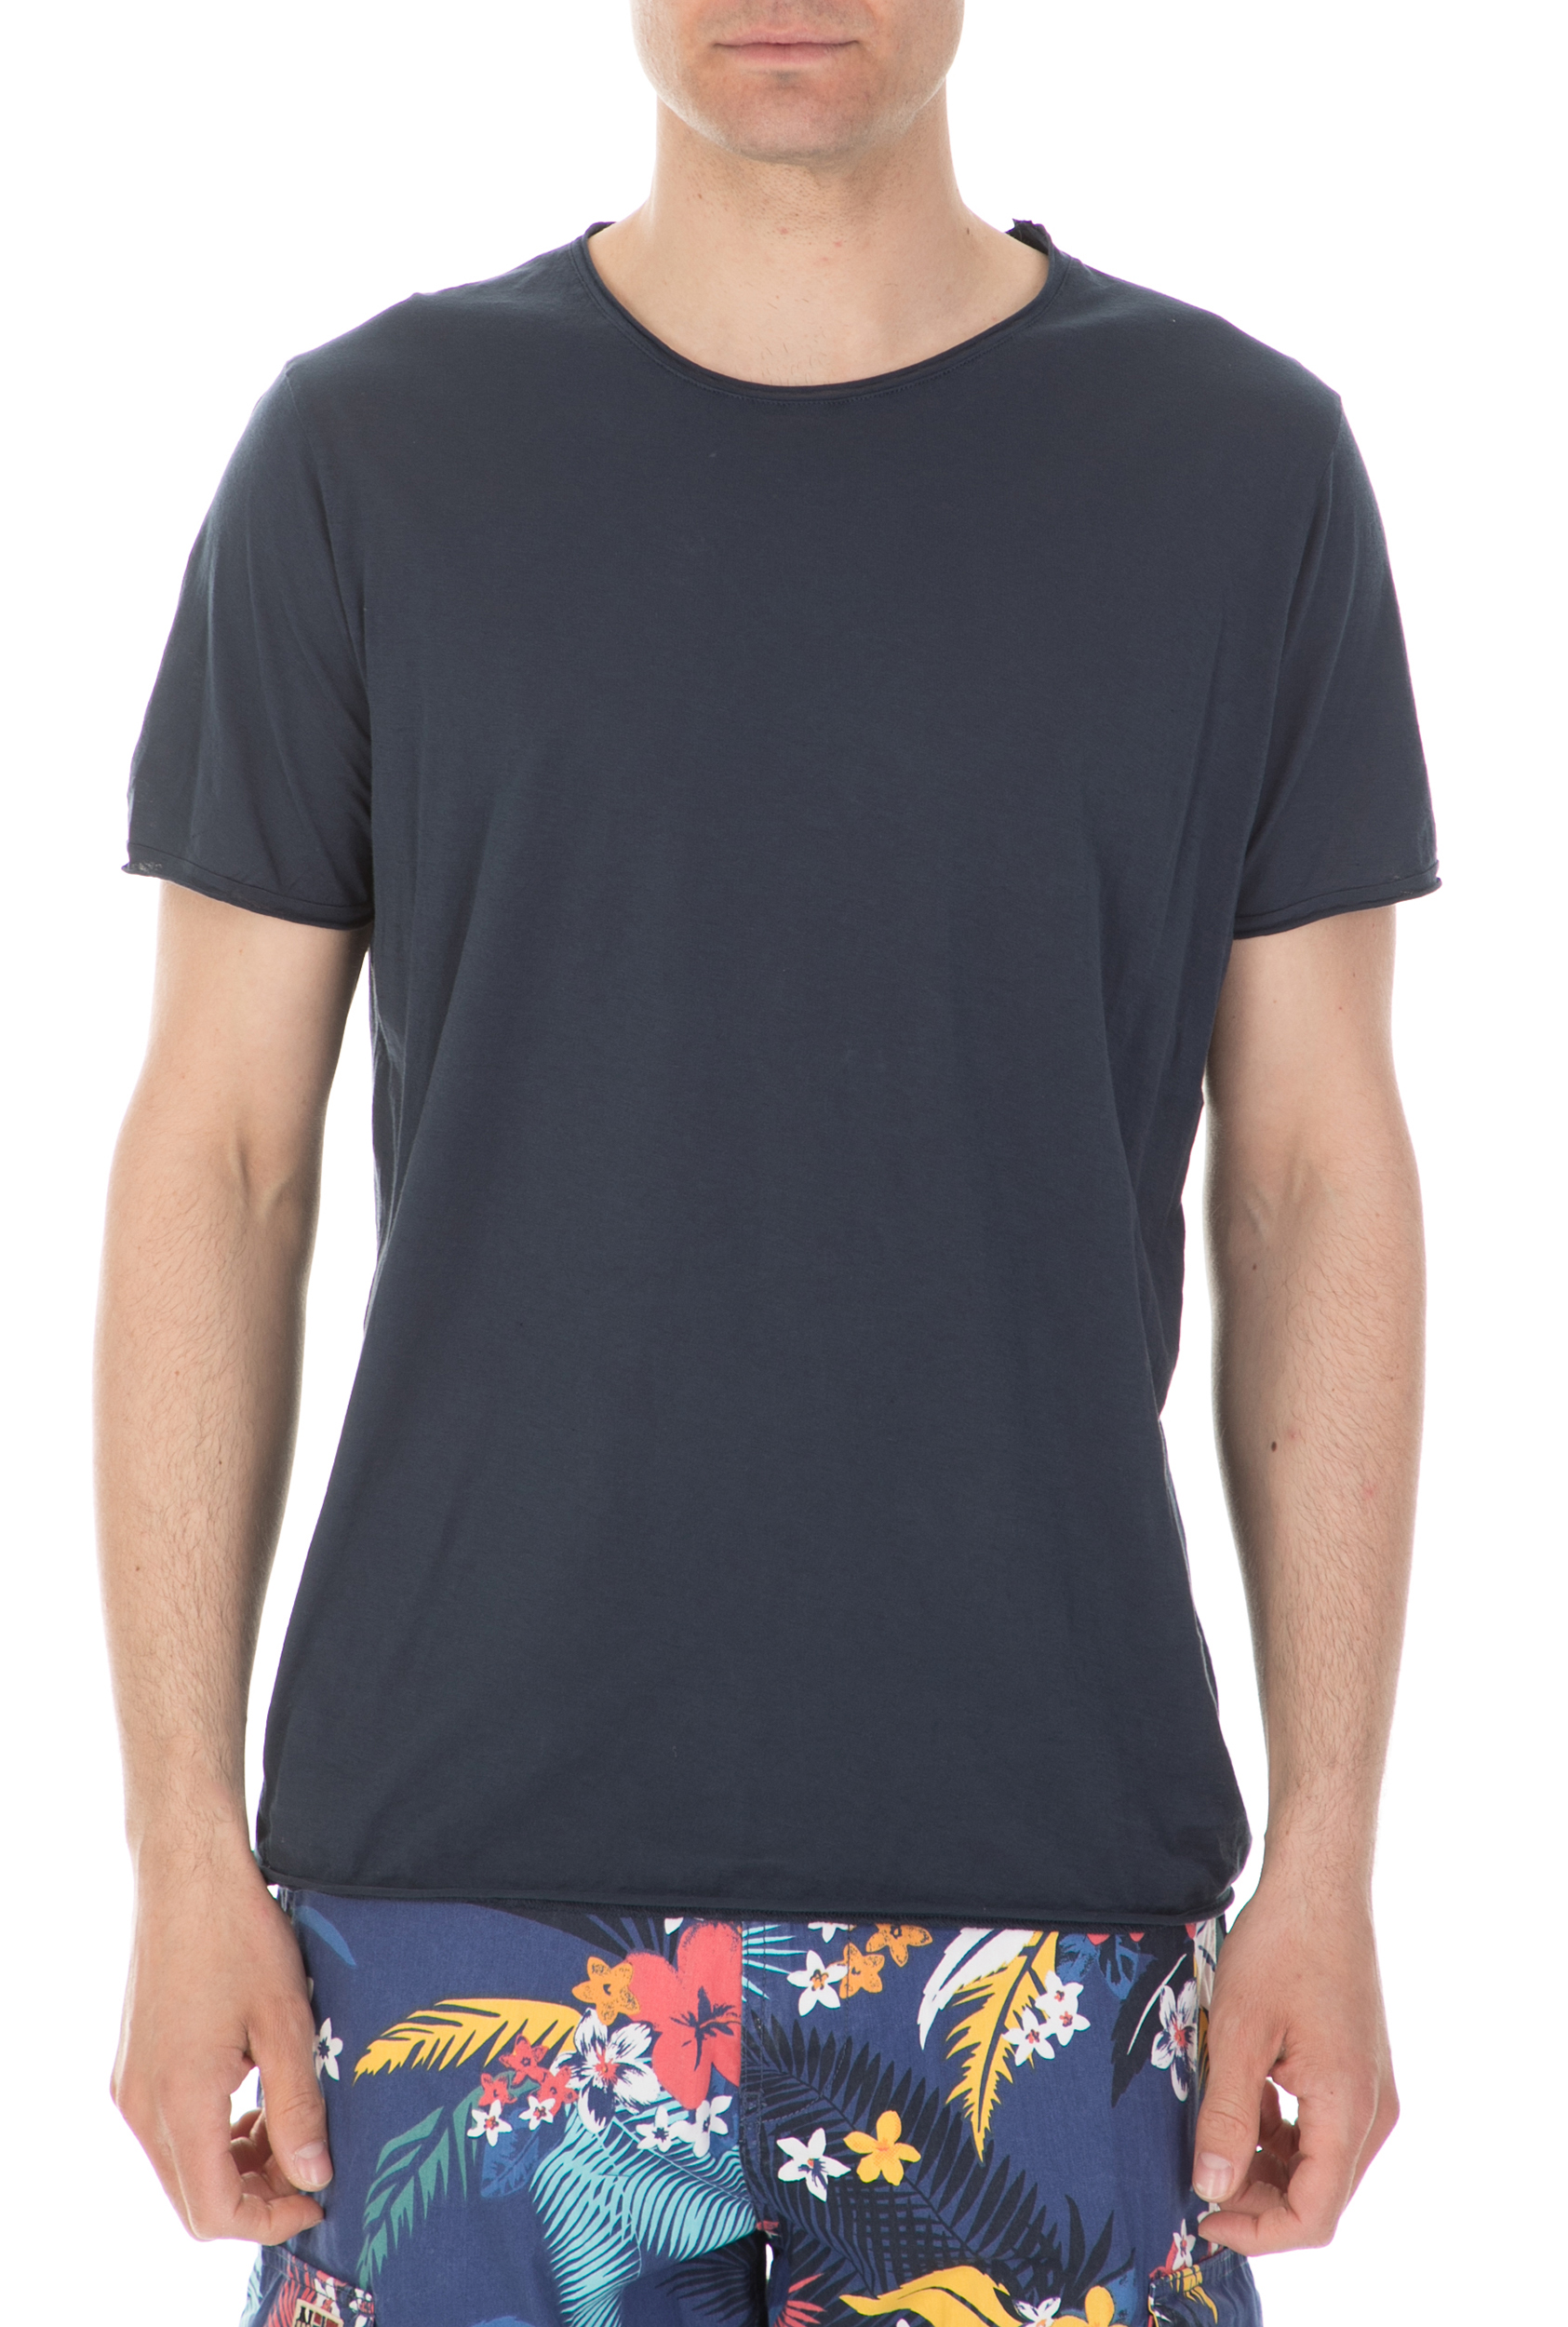 Ανδρικά/Ρούχα/Μπλούζες/Κοντομάνικες AMERICAN VINTAGE - Ανδρική κοντομάνικη μπλούζα AMERICAN VINTAGE μπλε